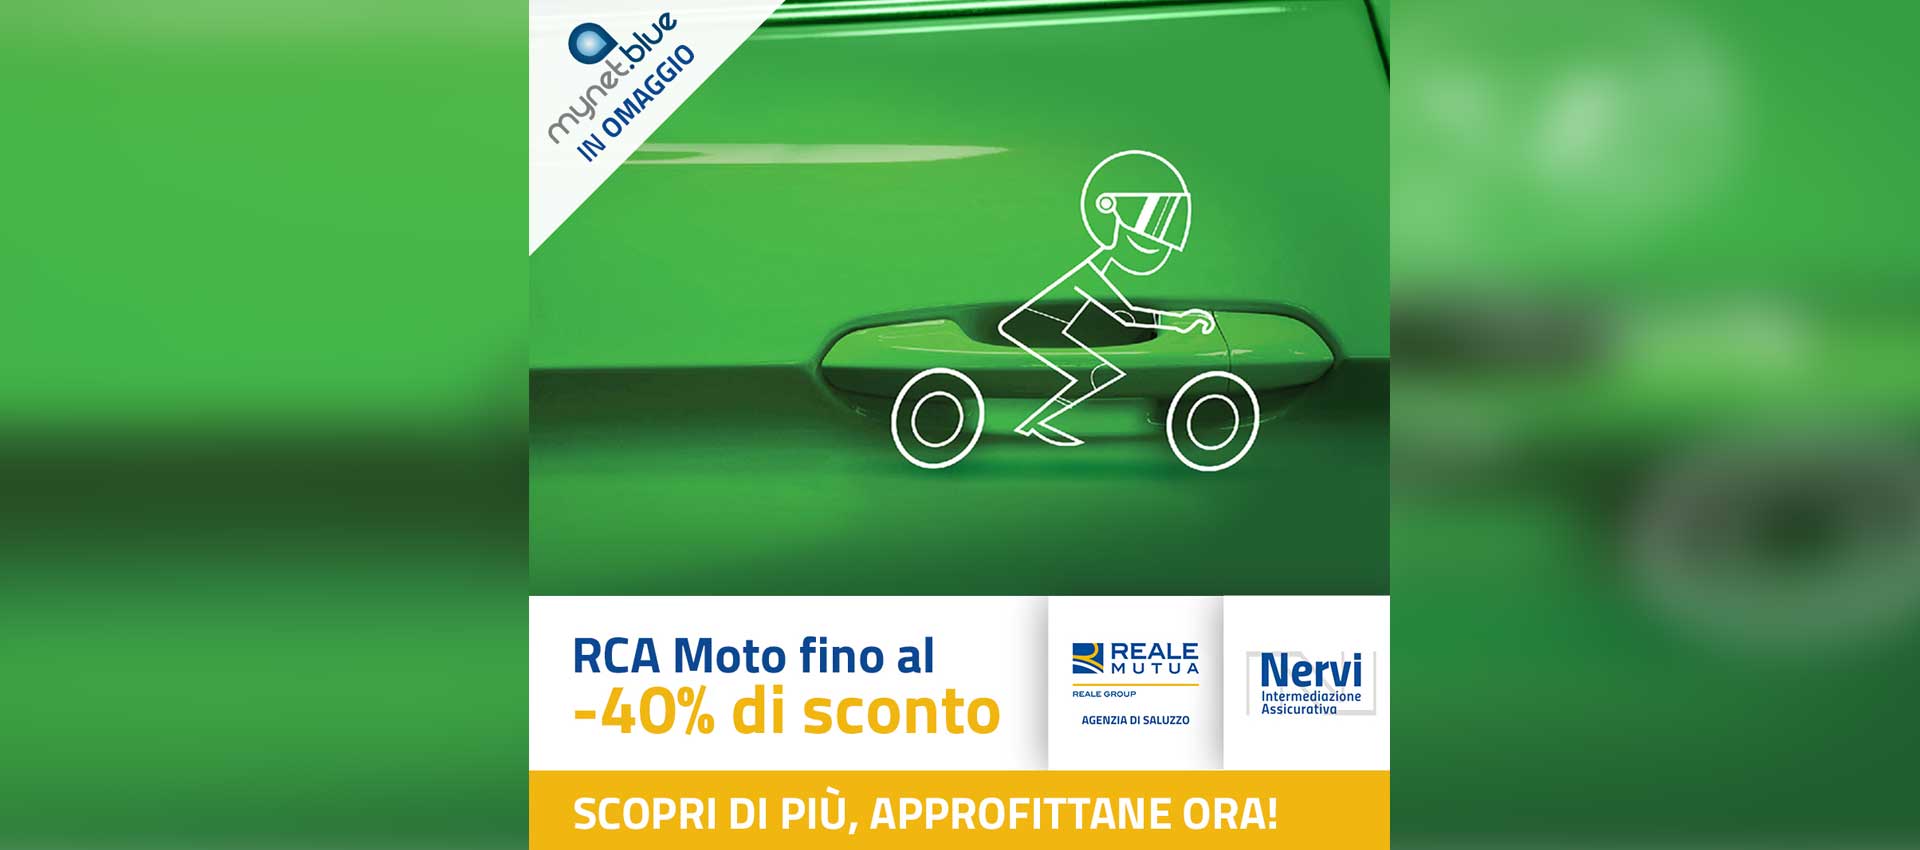 Reale Saluzzo RCA Moto